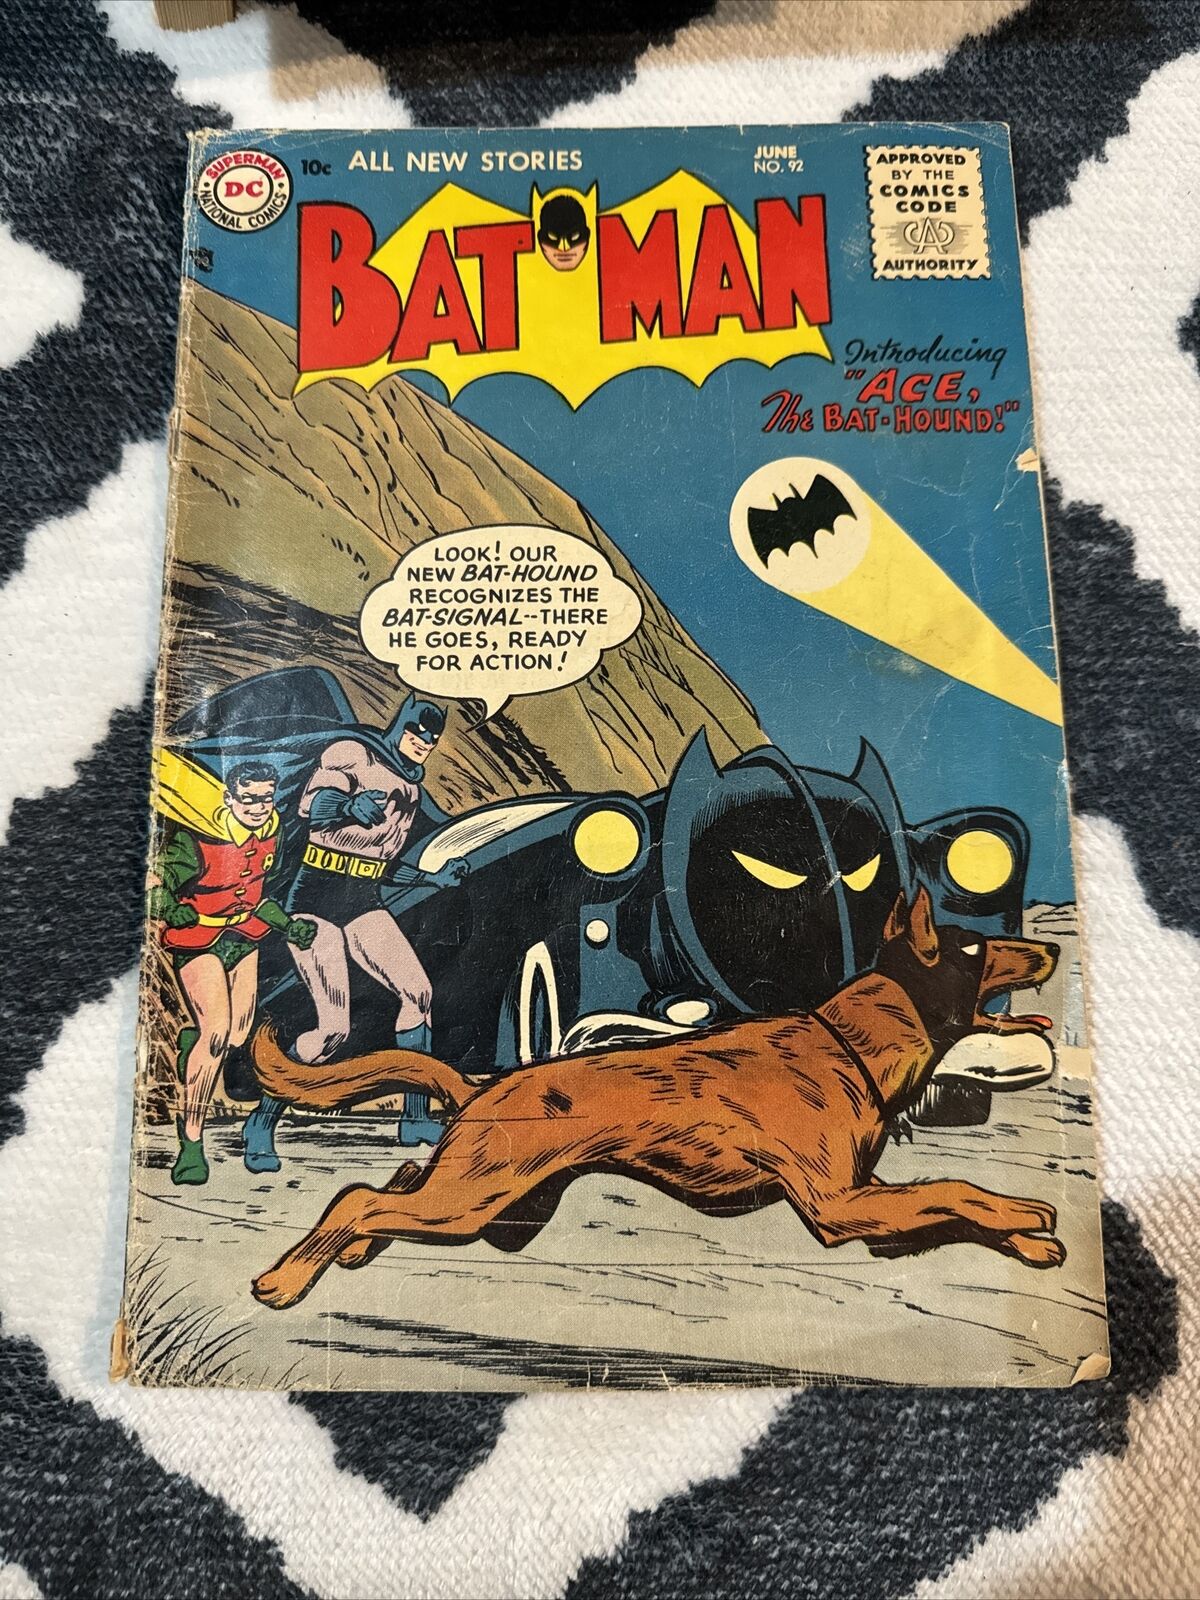 BATMAN #92 (1955) 1st ACE The Bat-Hound Golden Age Dc Comics